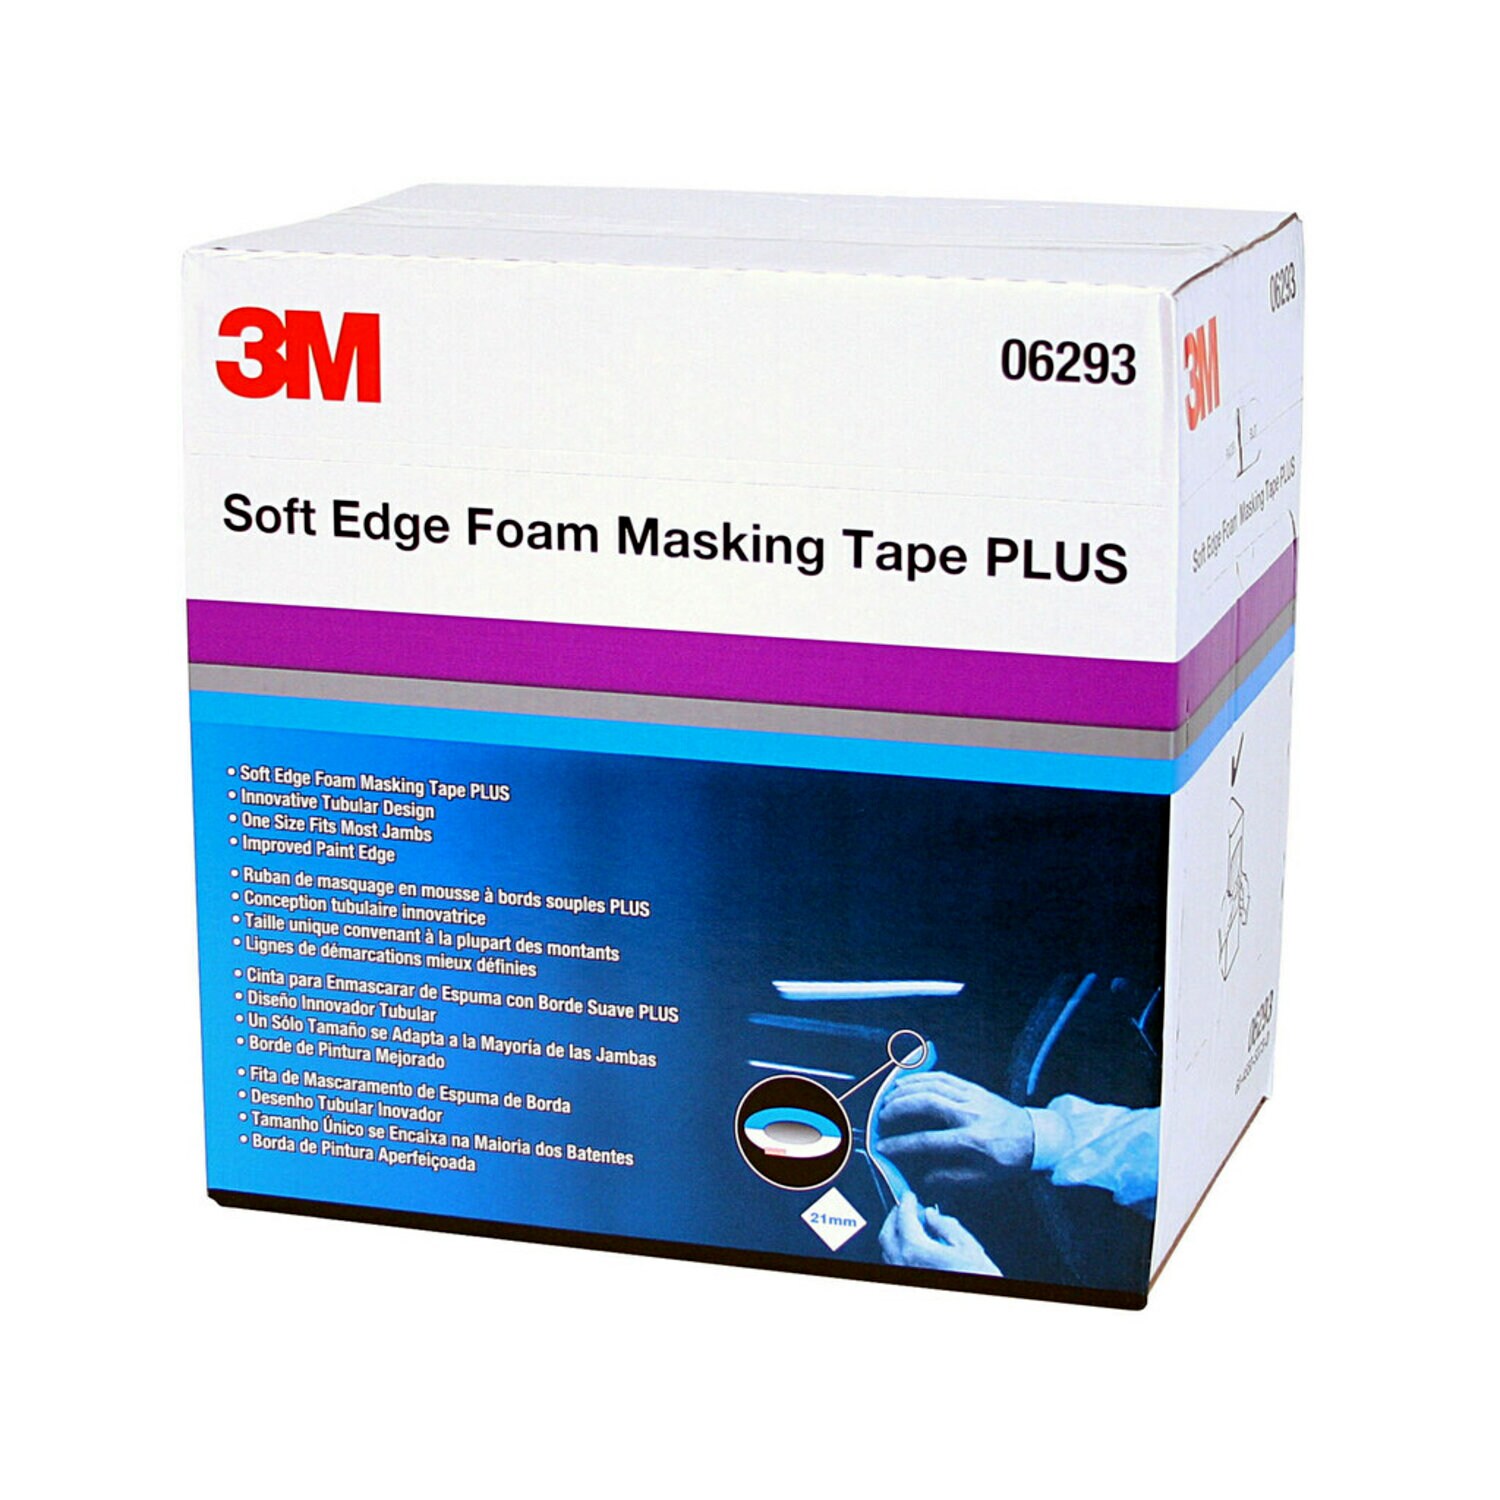 7000000527 - 3M Soft Edge Foam Masking Tape +, 06293, 21mm x 49m, 1 per case